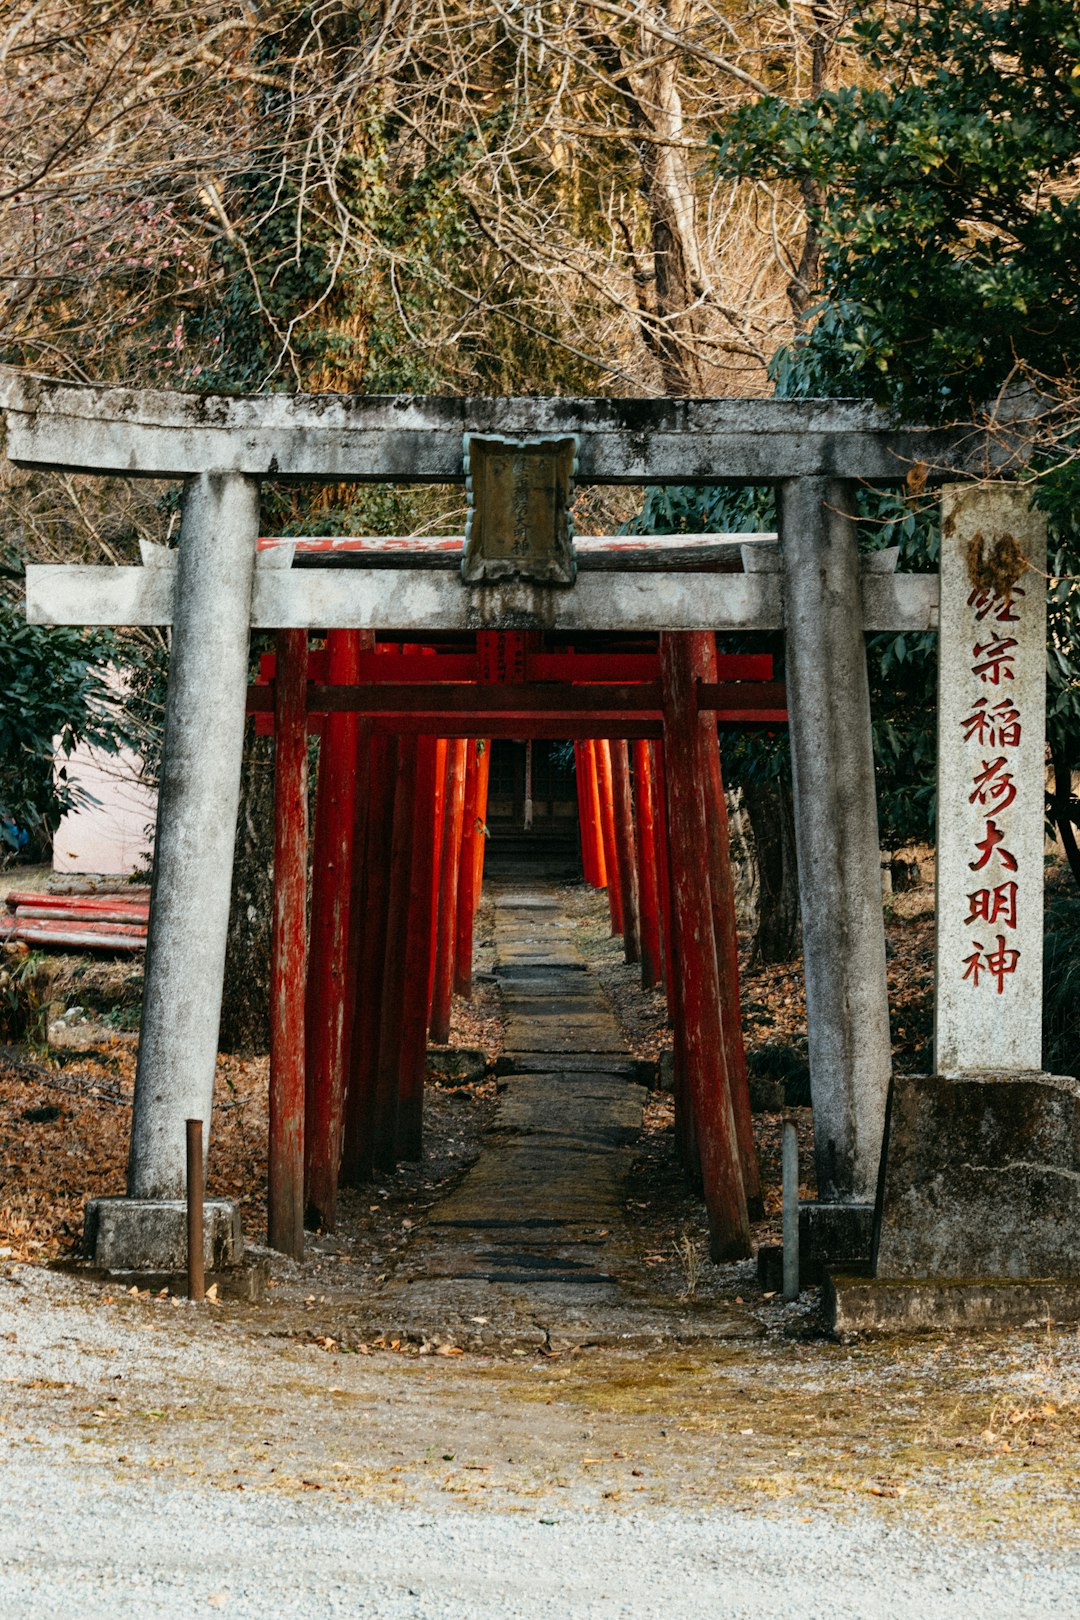 Temple photo spot Kinugawa Onsen Kanuma